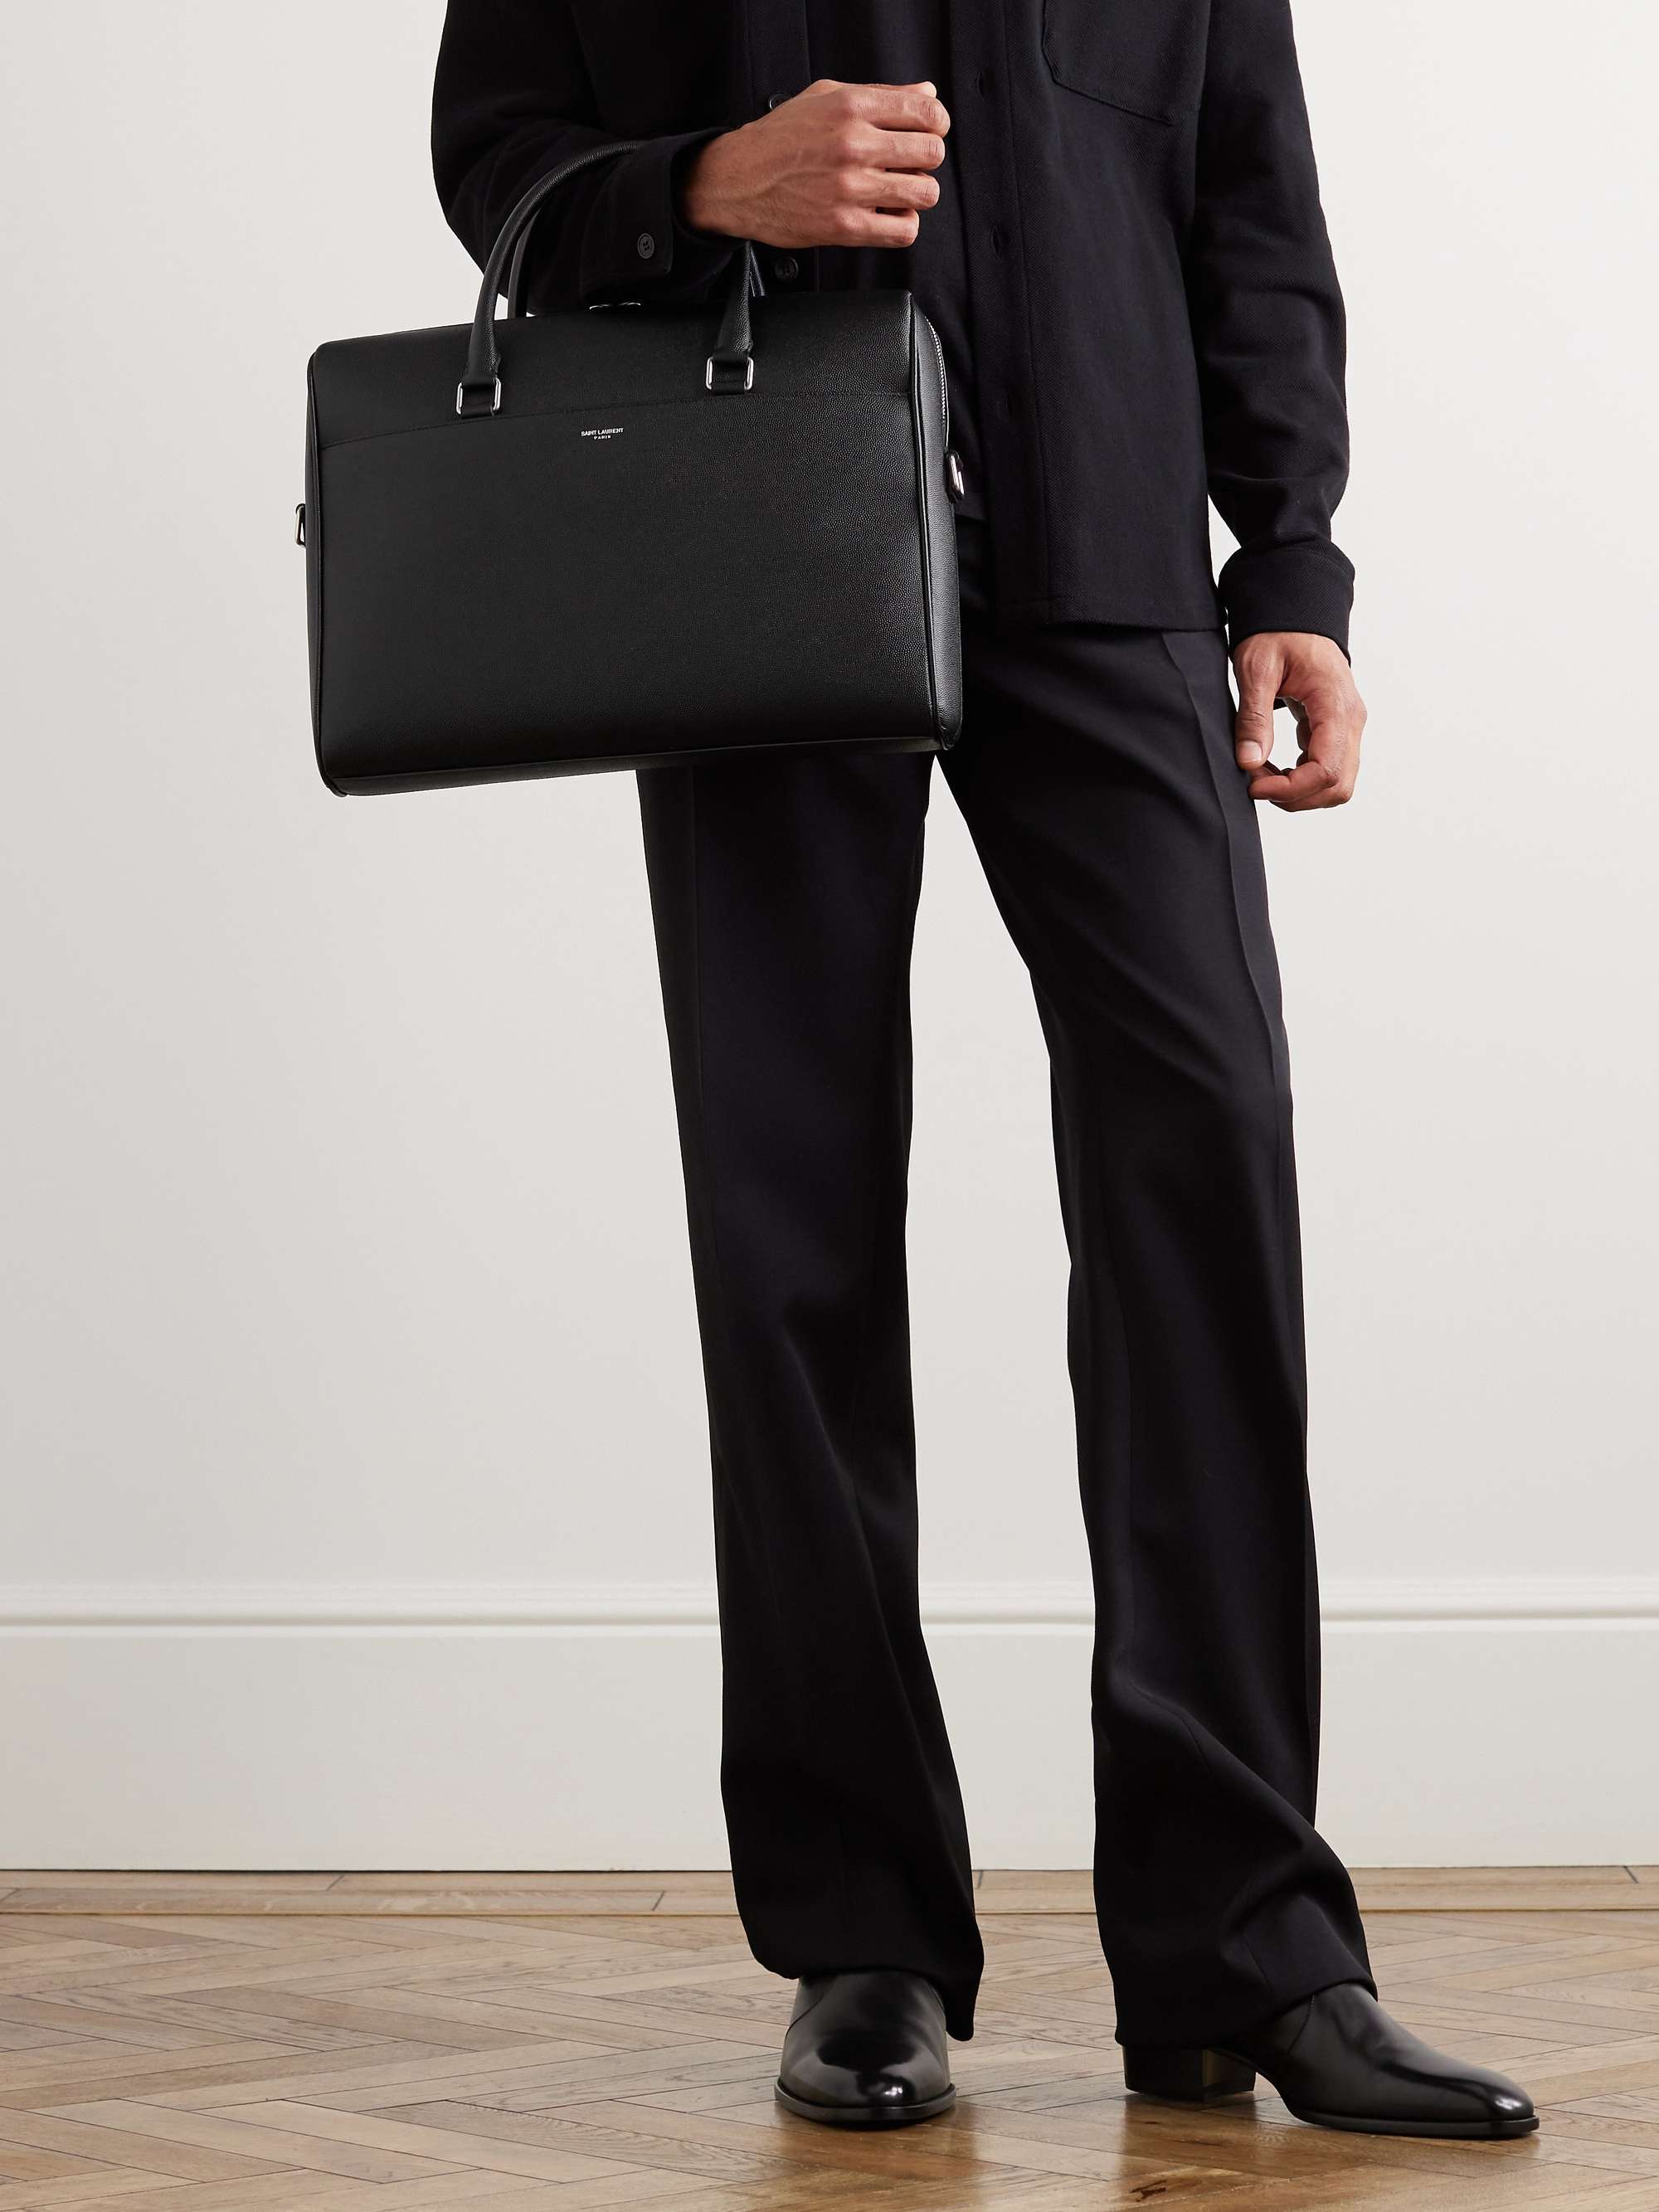 SAINT LAURENT Full-Grain Leather Briefcase for Men | MR PORTER